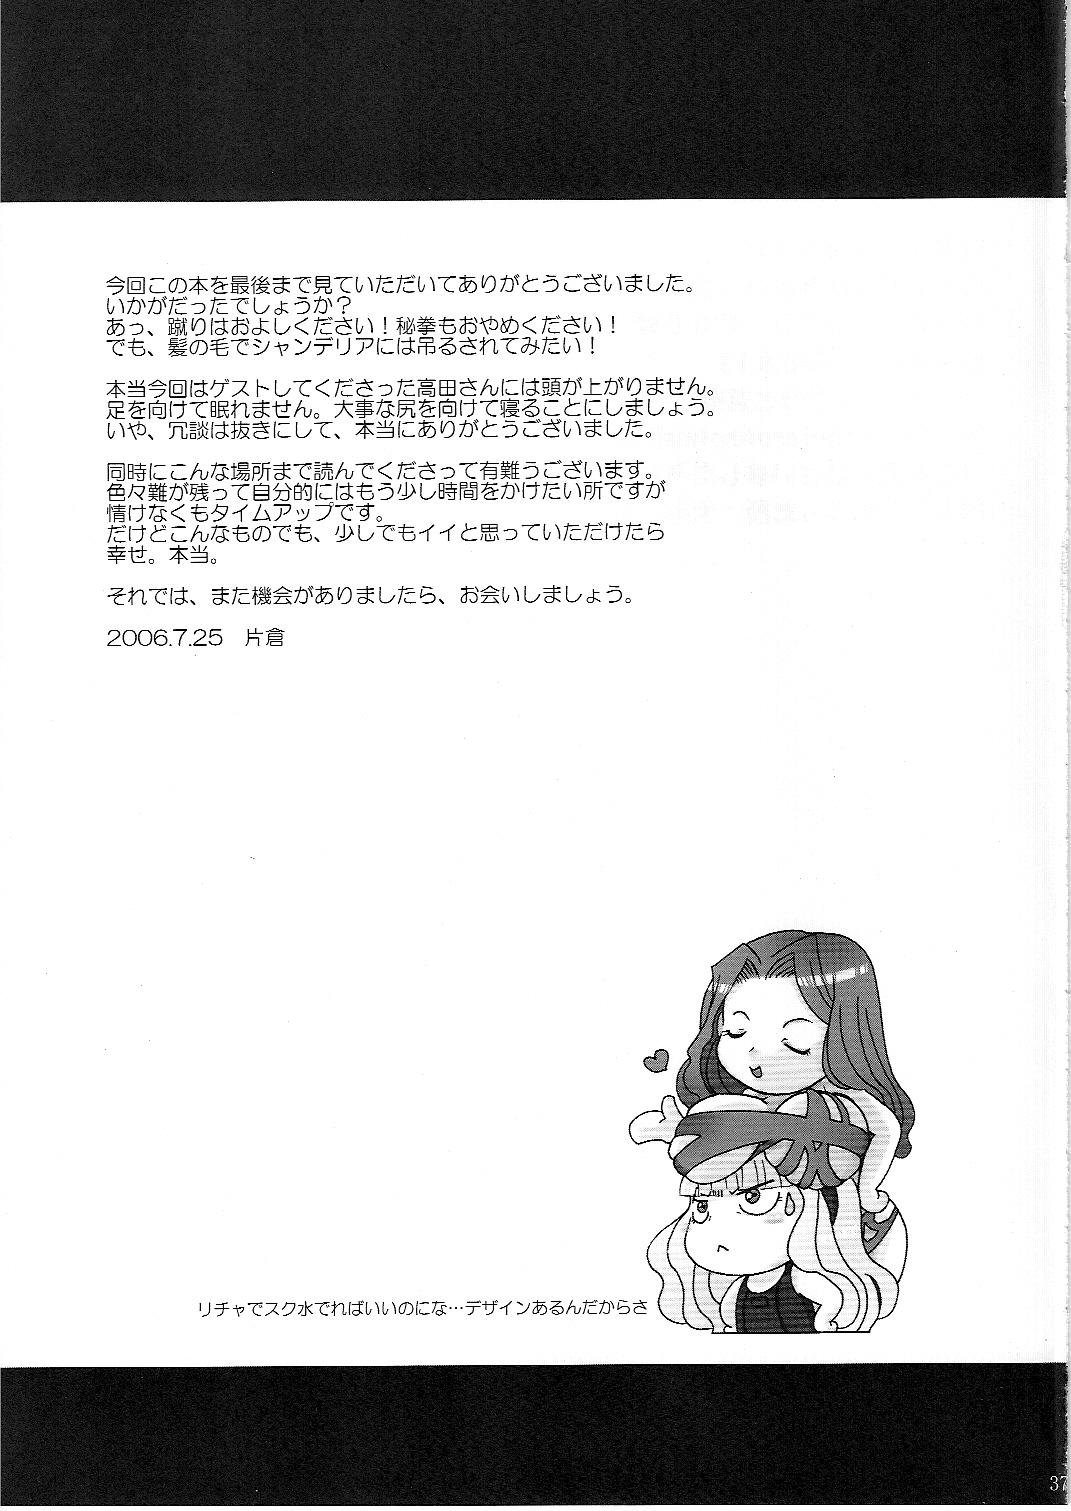 Amature Kokochiki - Kowloon youma gakuenki Nice - Page 35